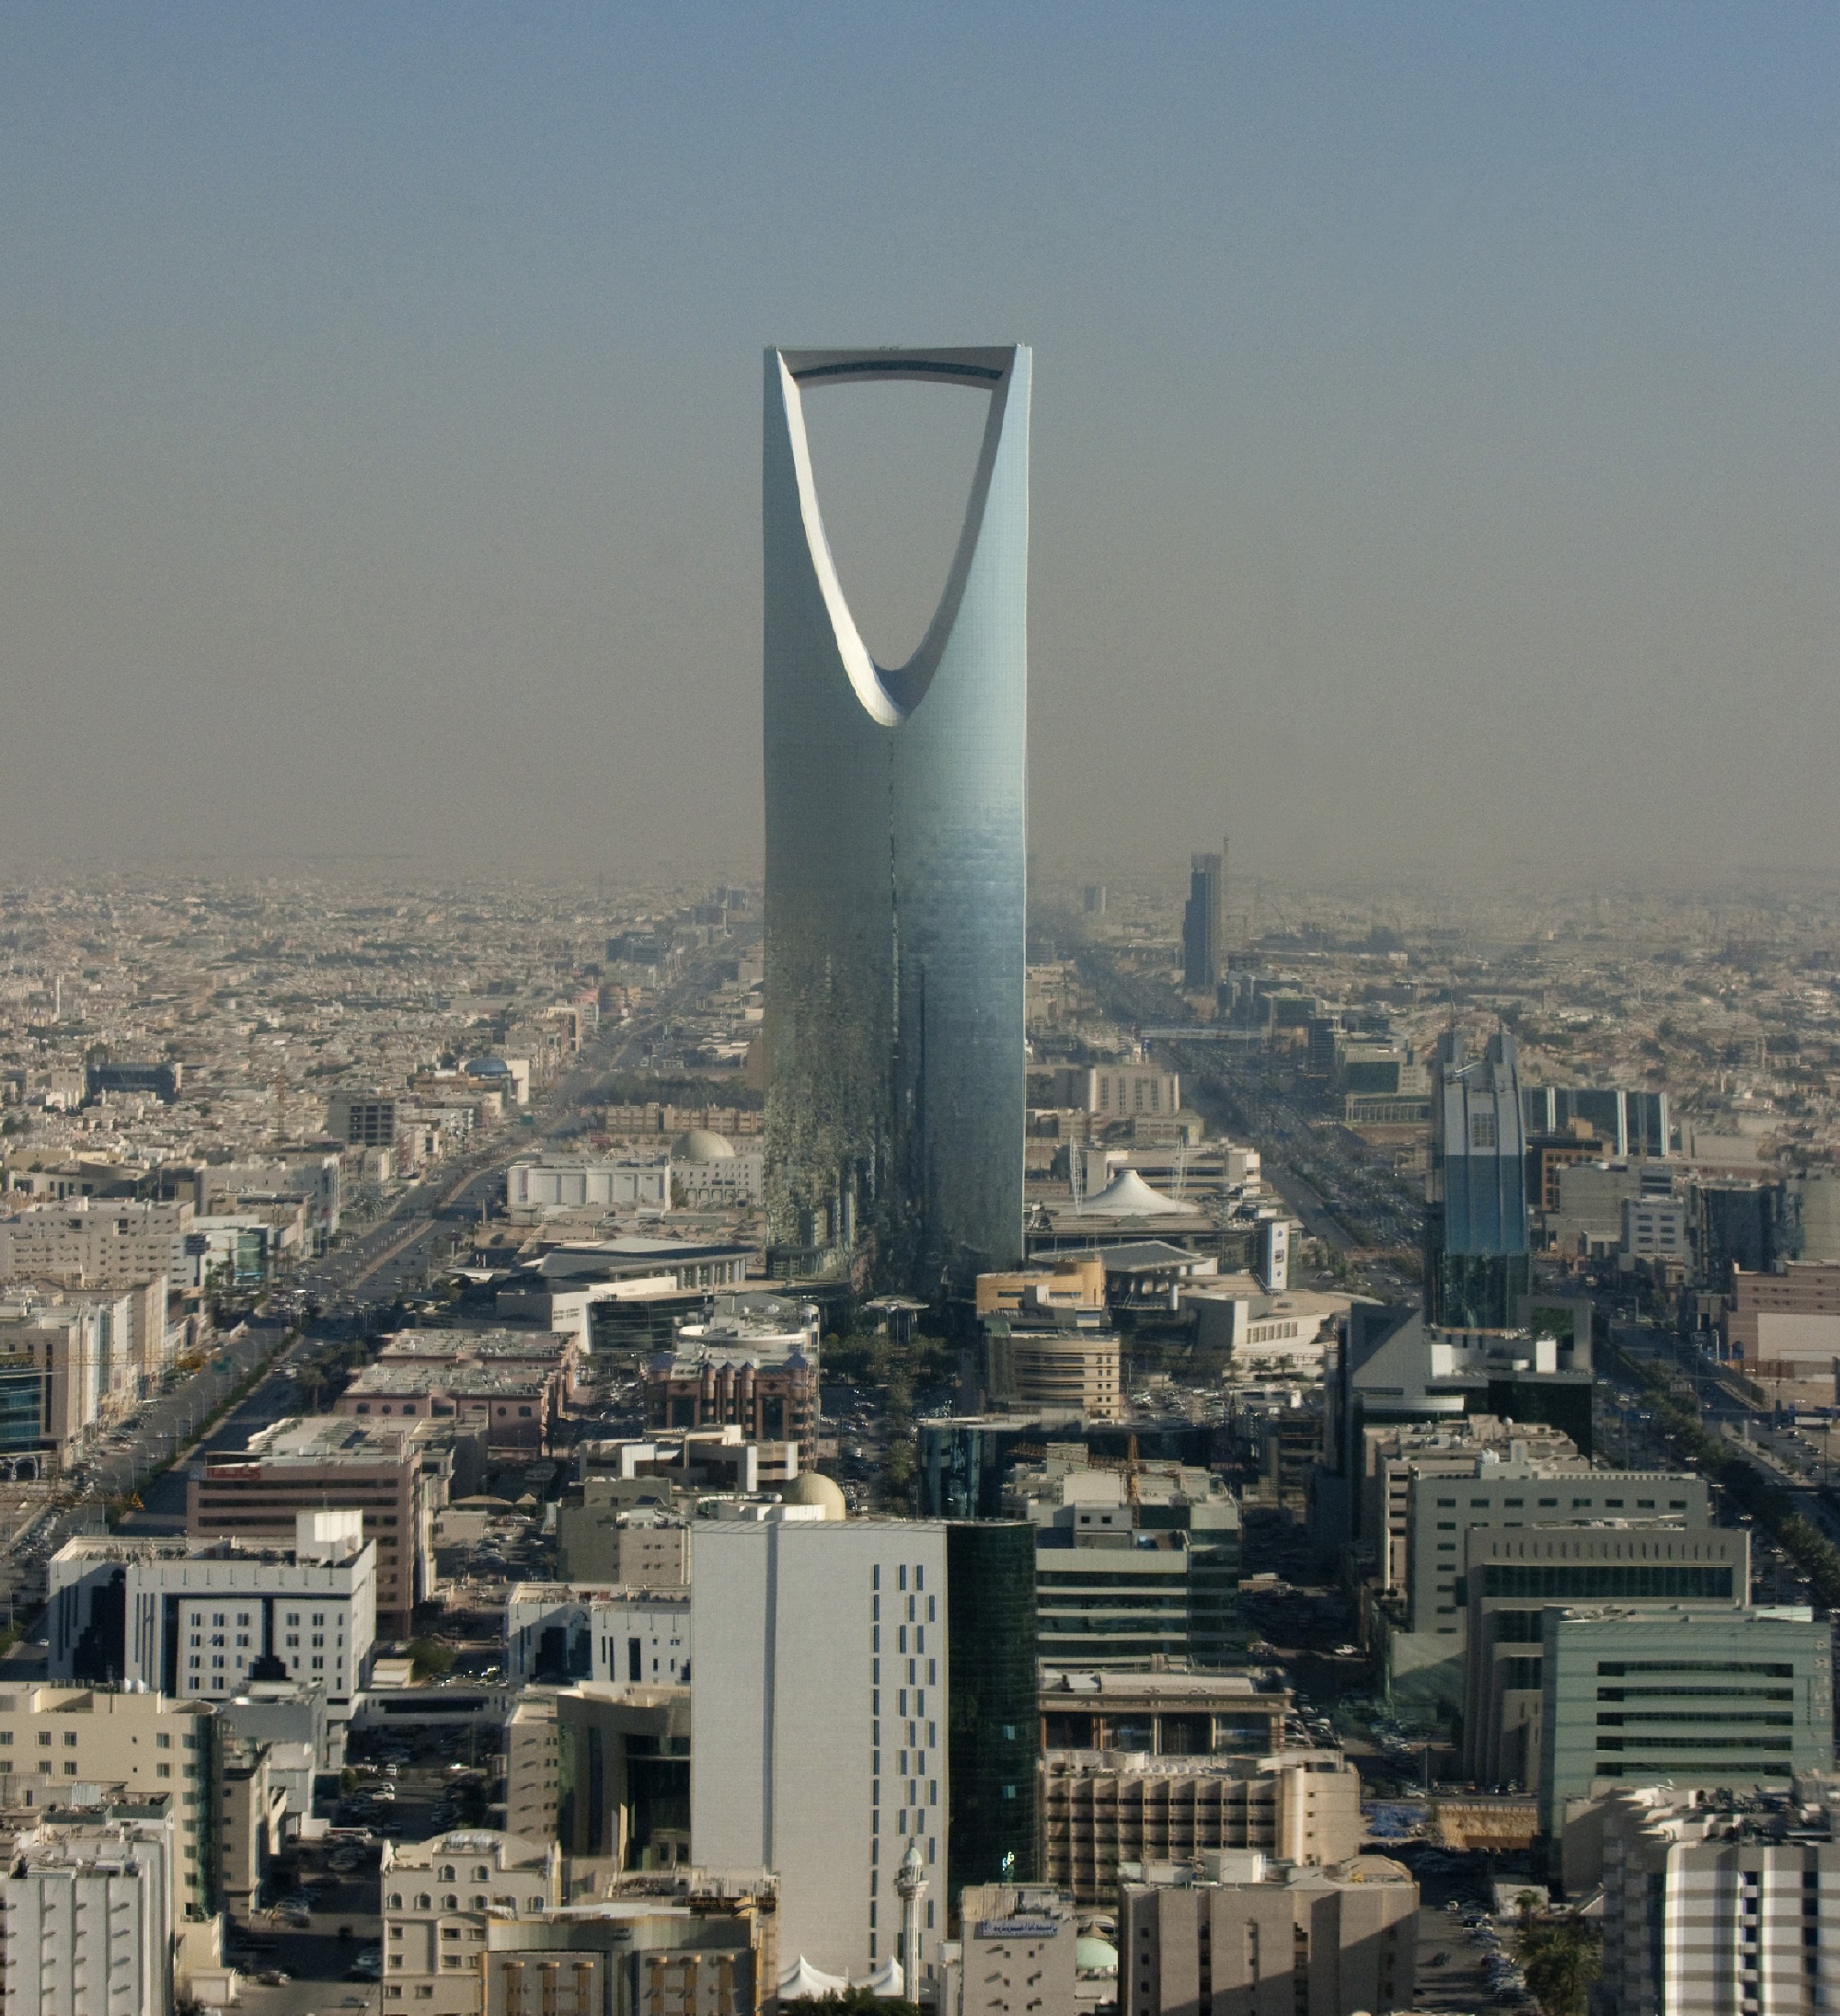 Szaúd-Arábia legmagasabb épülete, a Kingdom Tower ad otthont a Four Seasons hotelének is